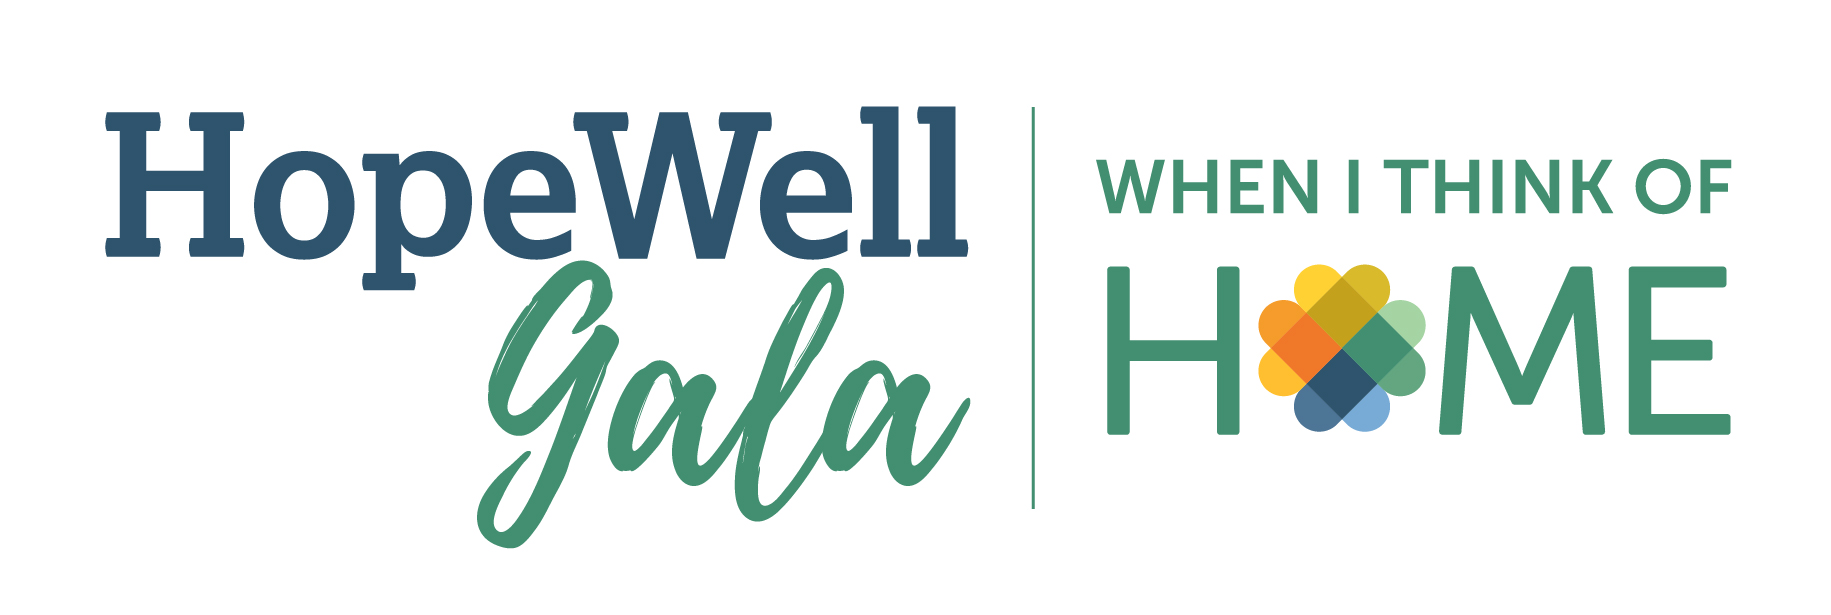 HopeWell gala logo